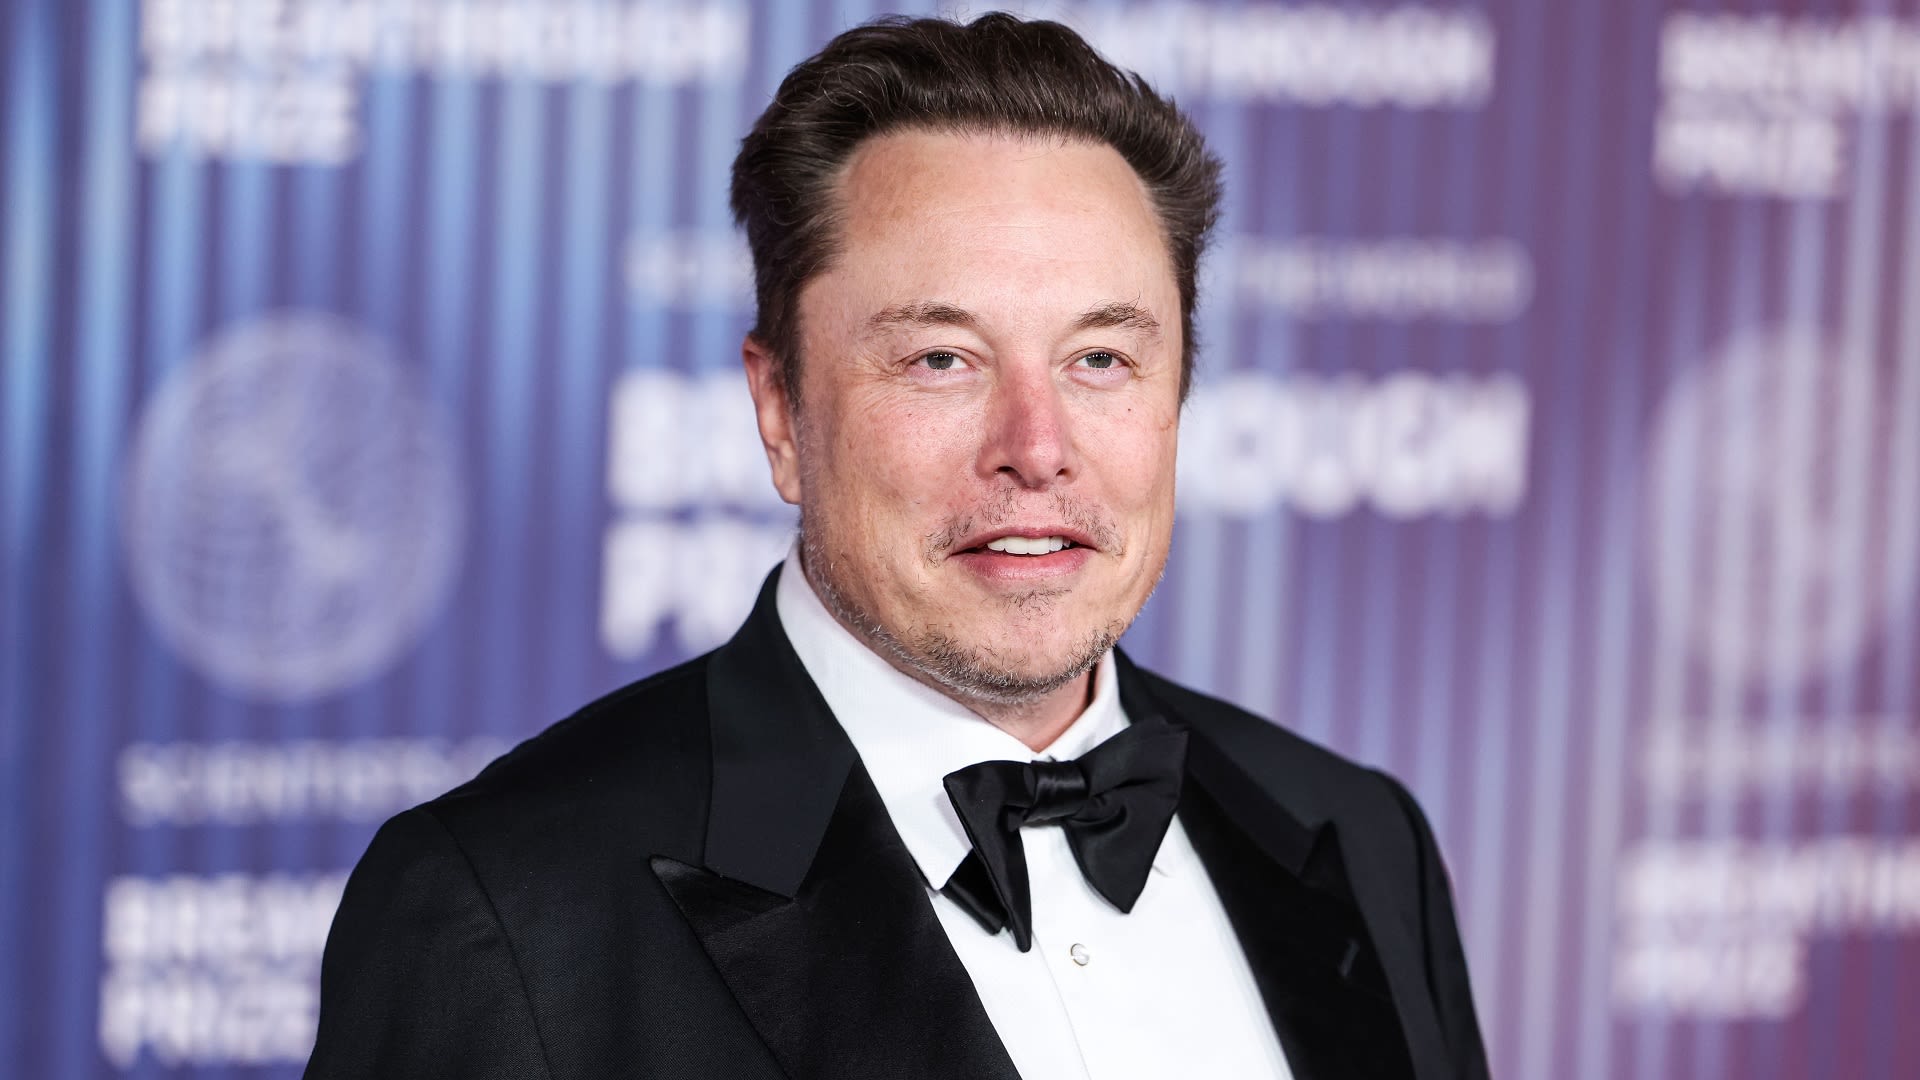 5 Ways Elon Musk Stays So Rich Even When Taking Big Risks